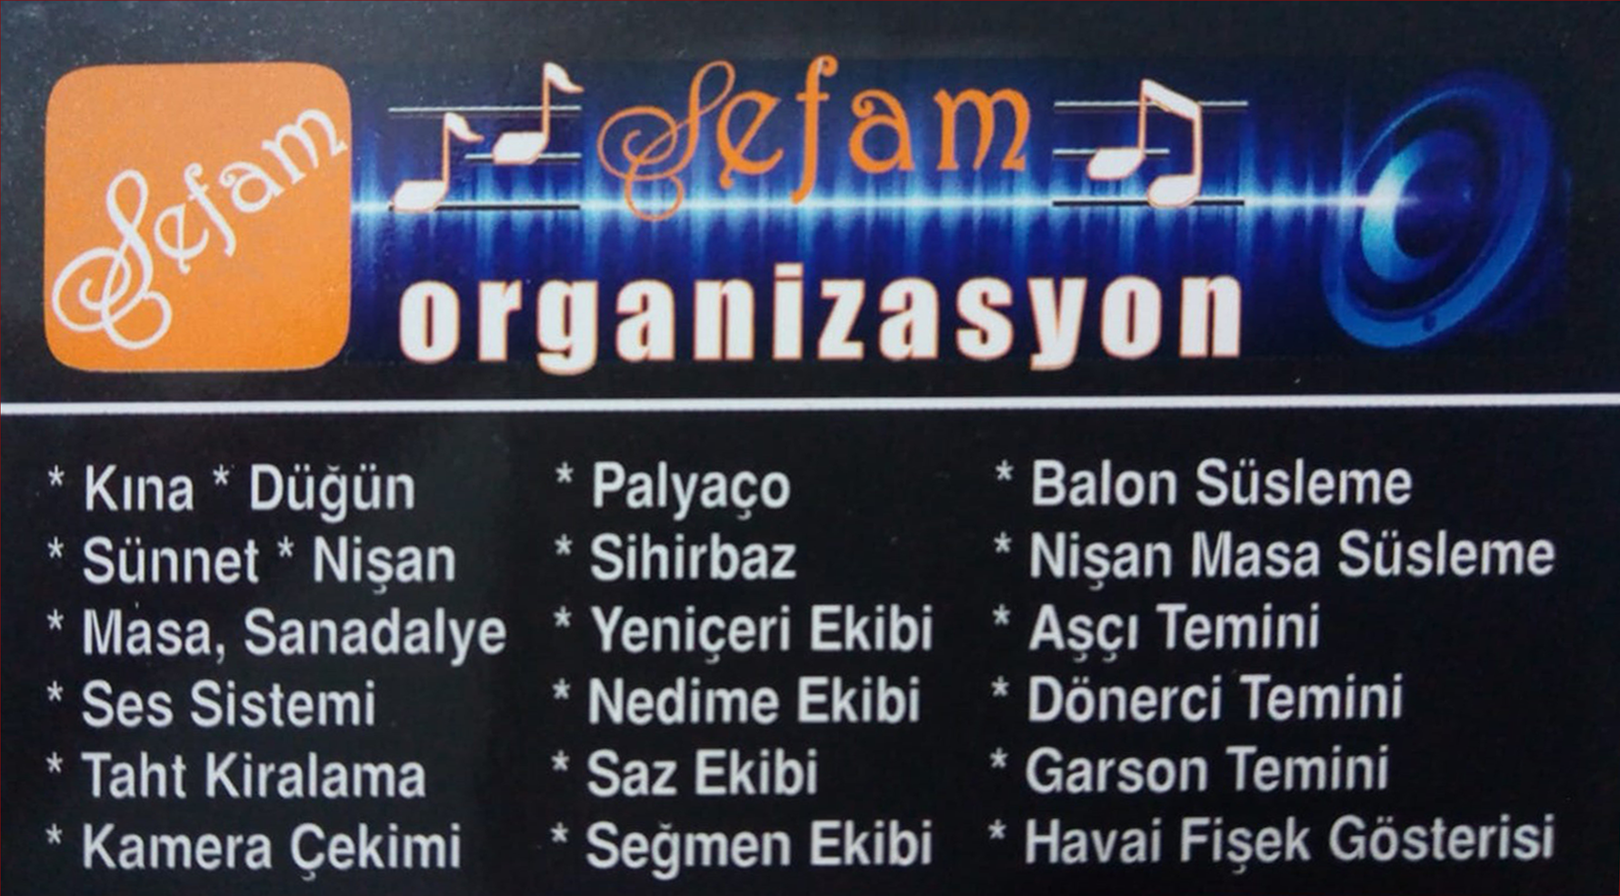 Ankara Elmadağ Sefam Organizasyon Ankara 0536 474 94 46 - 0552 474 94 46